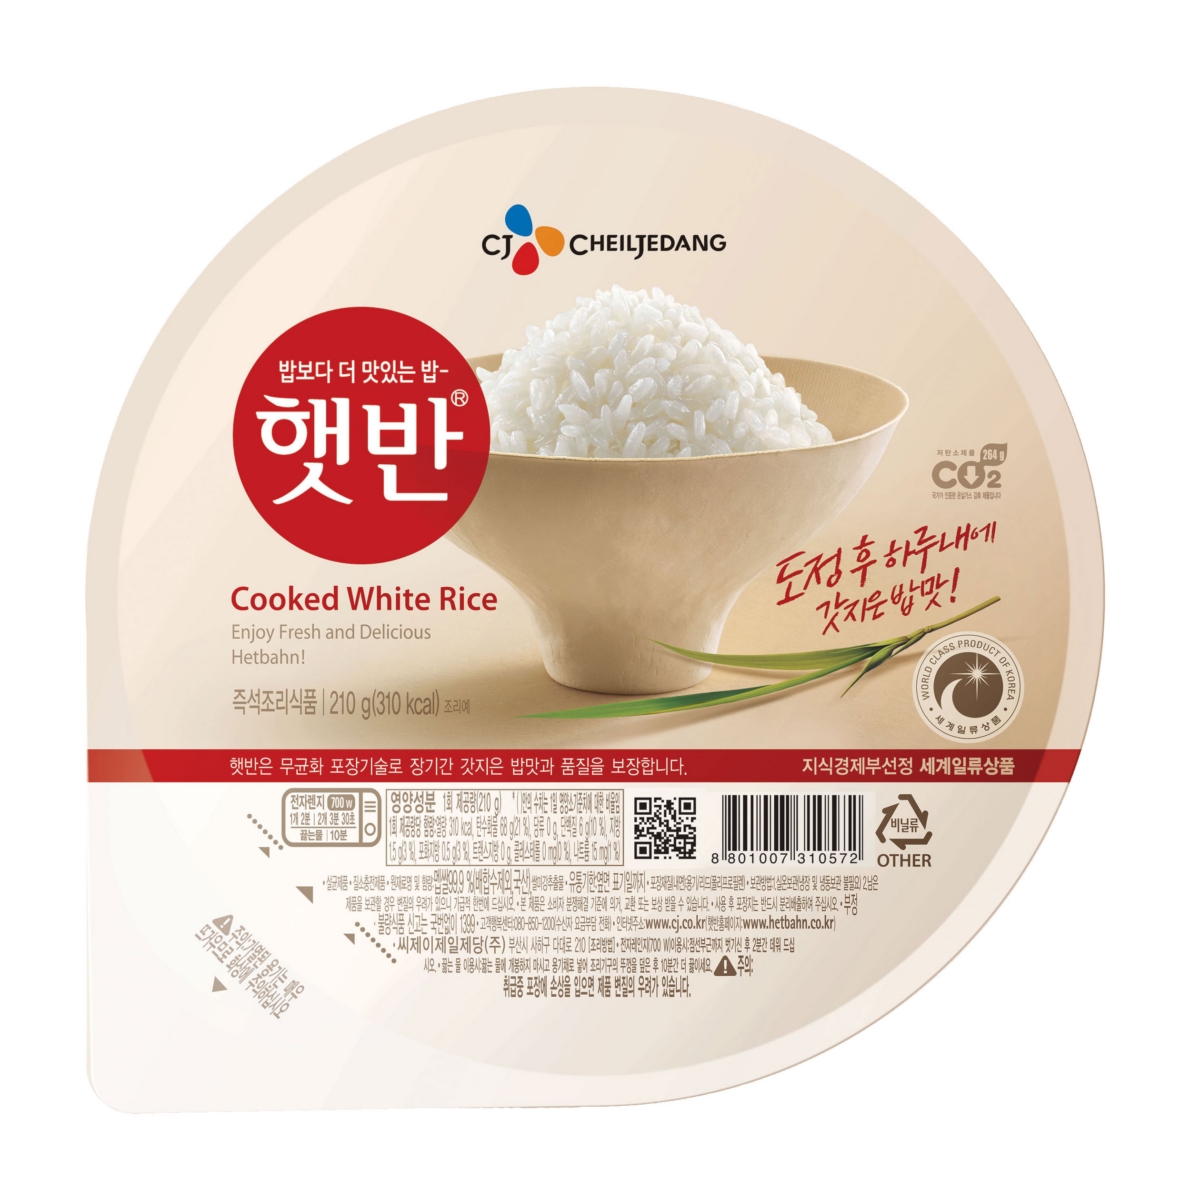 CJ제일제당의 즉석밥 제품 ‘햇반’